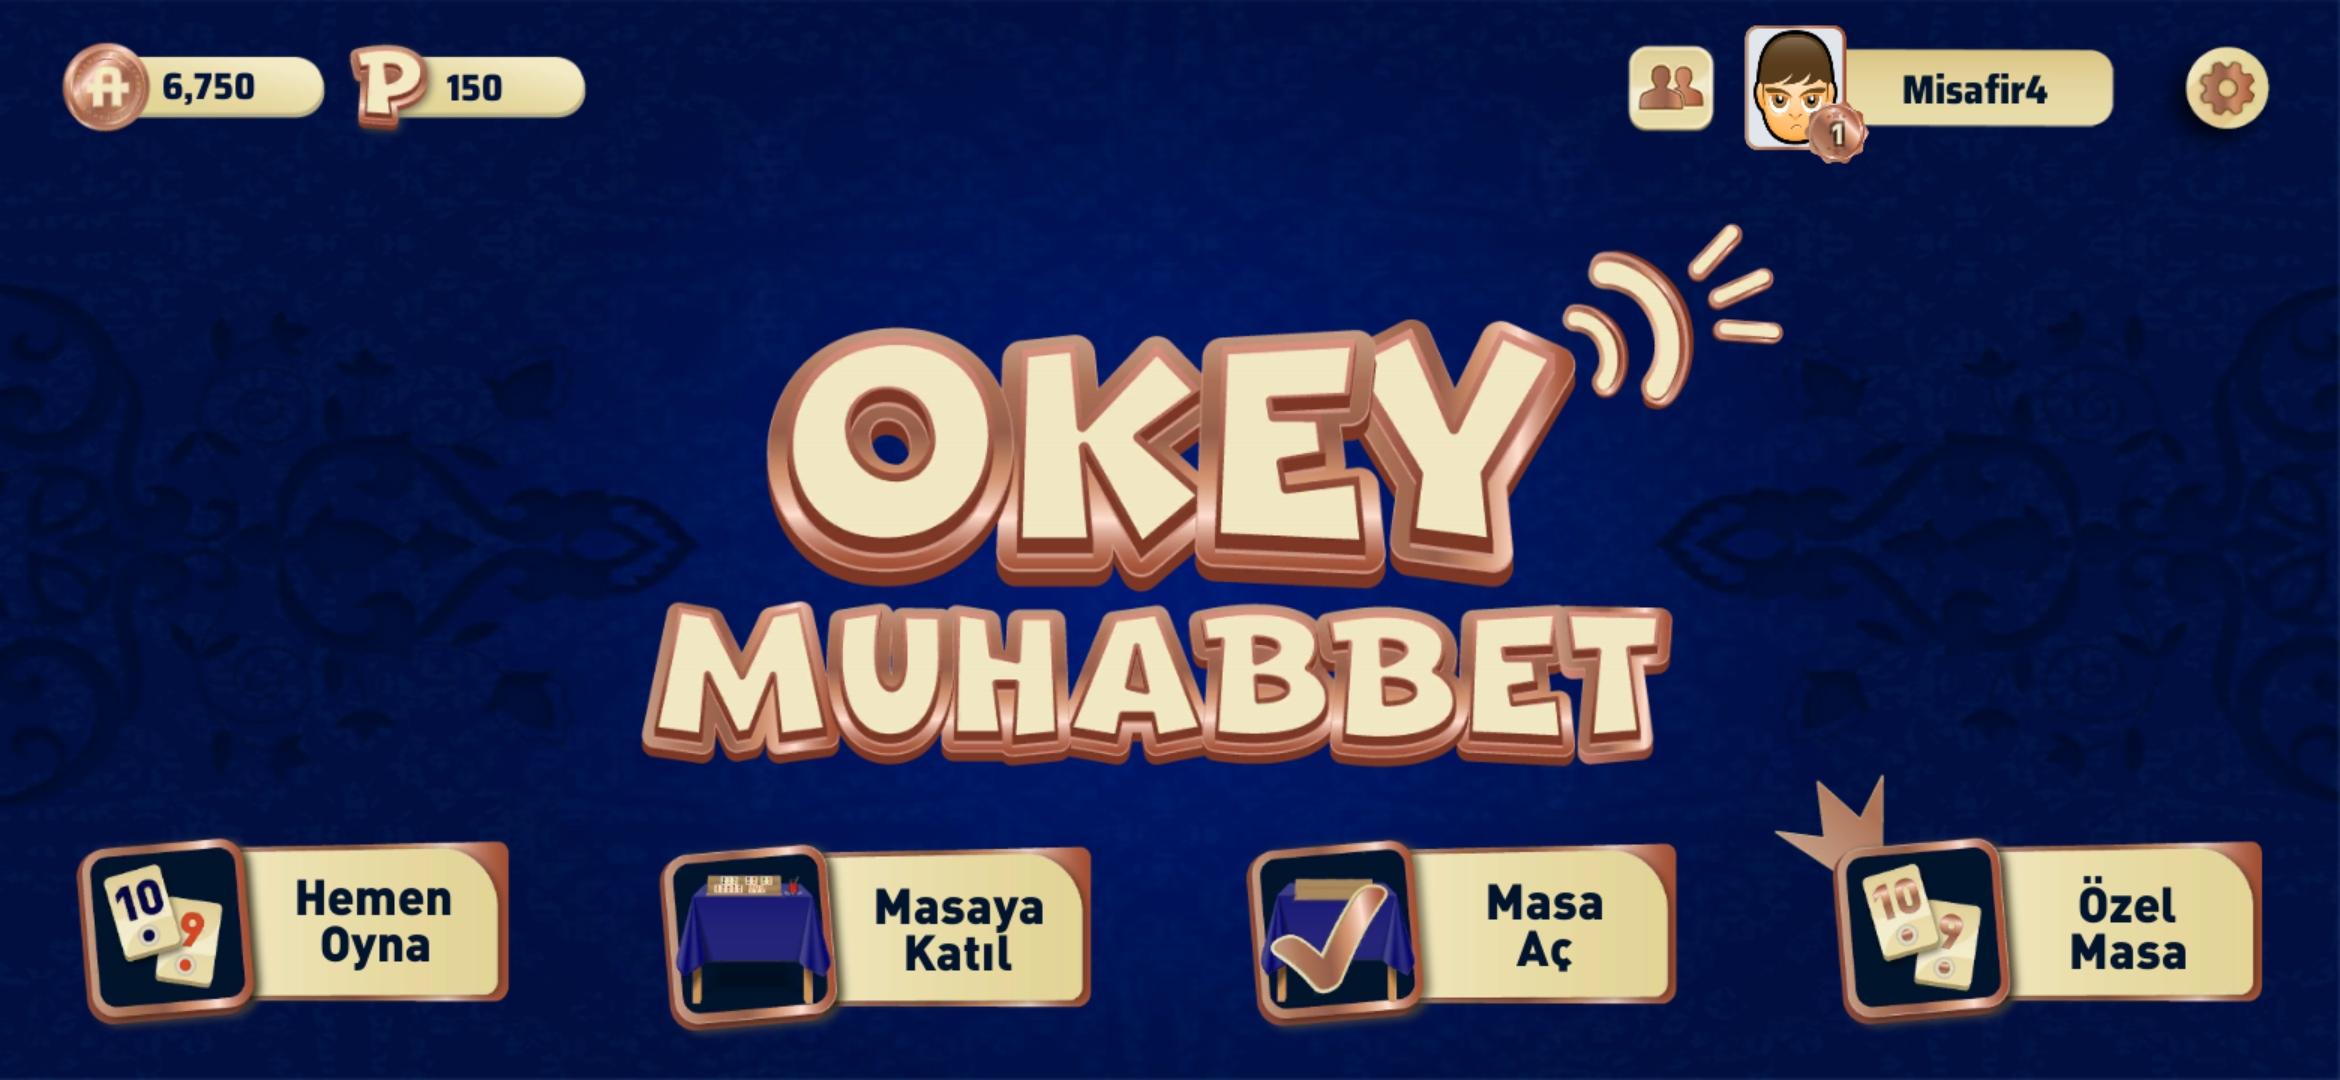 Okey Muhabbet 1.5.21 Screenshot 13